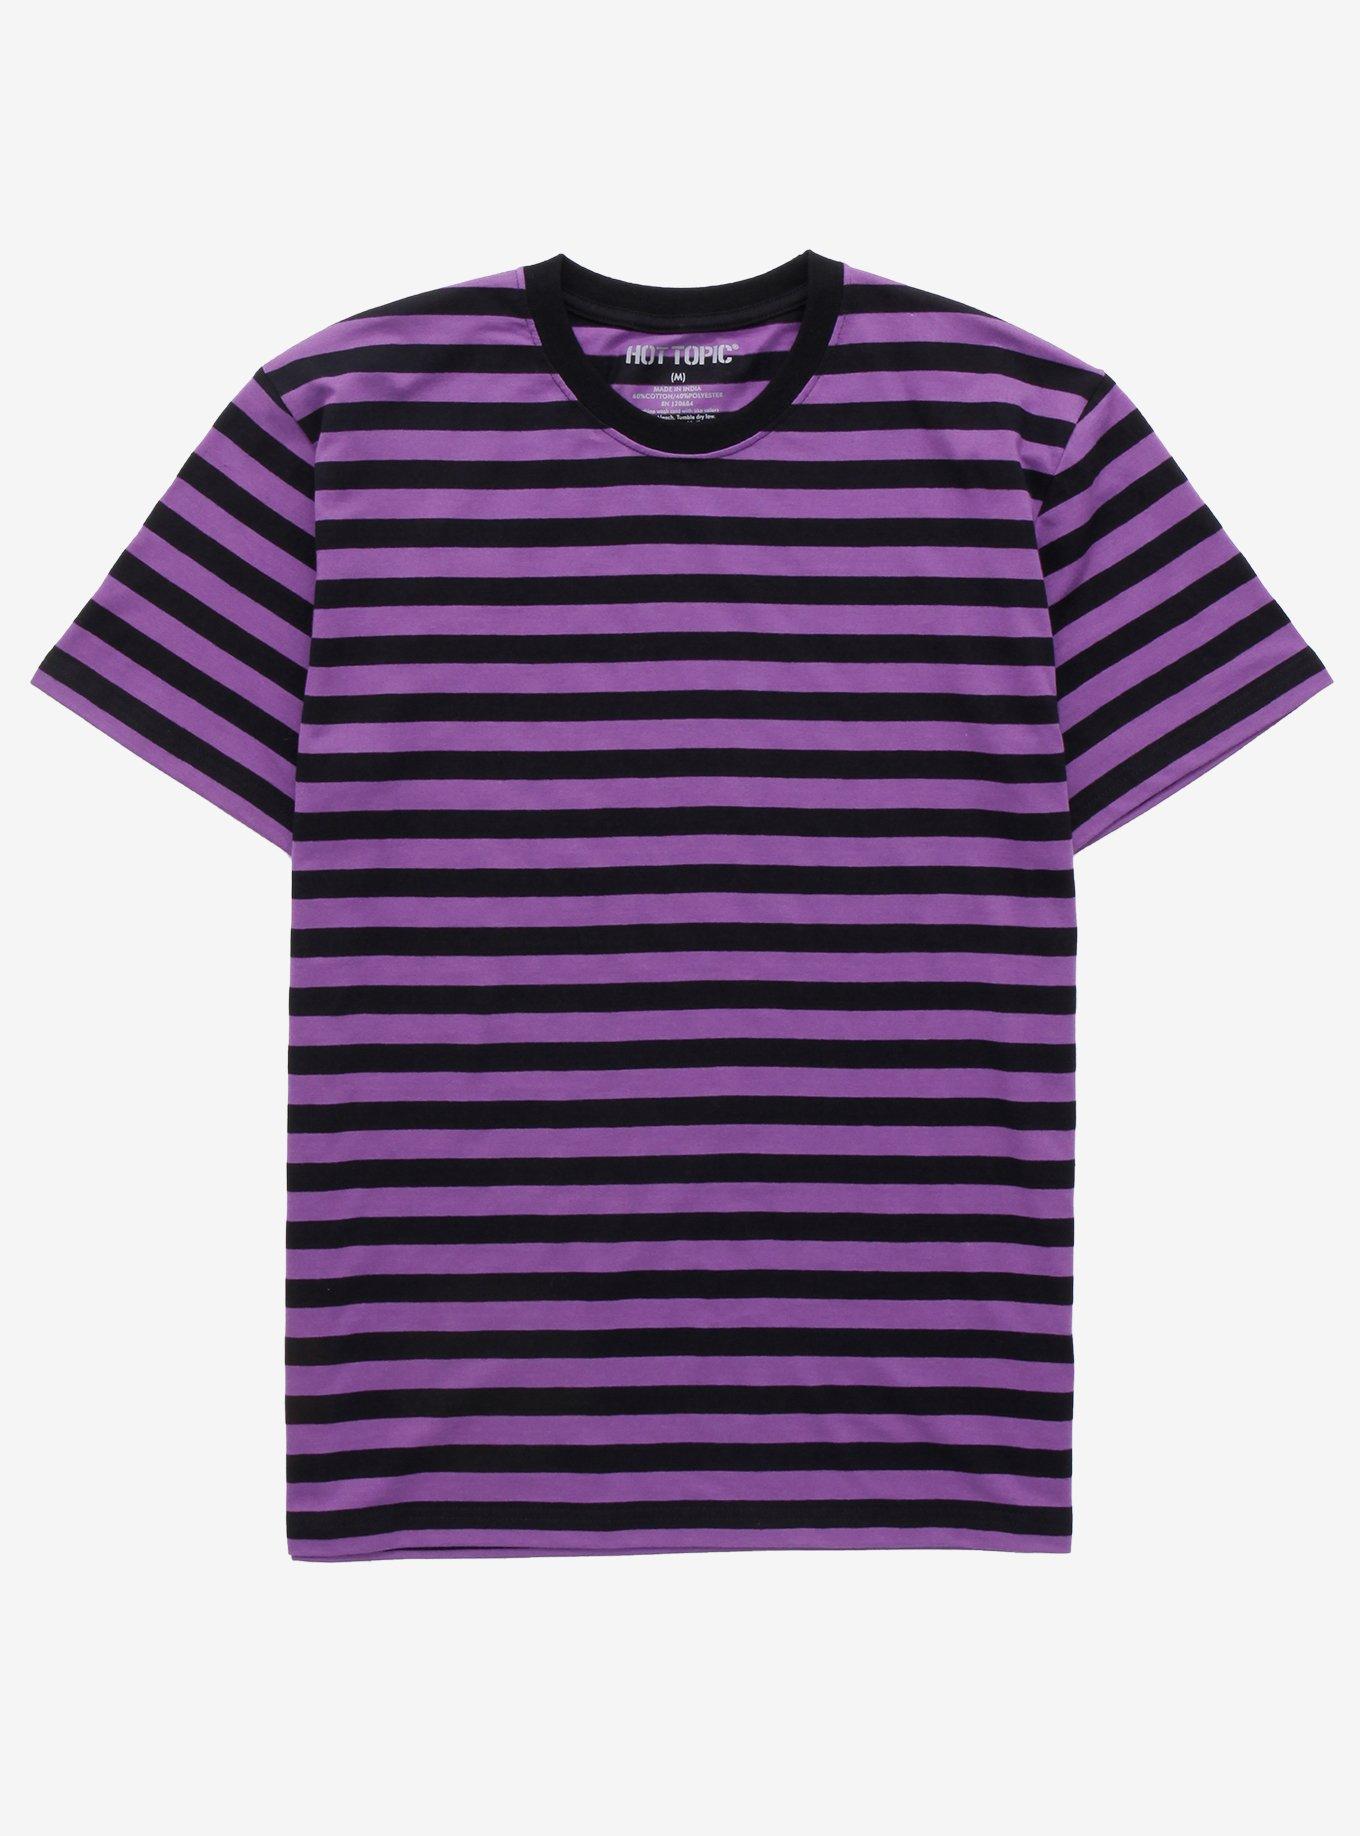 Purple & Black Stripe T-Shirt | Hot Topic